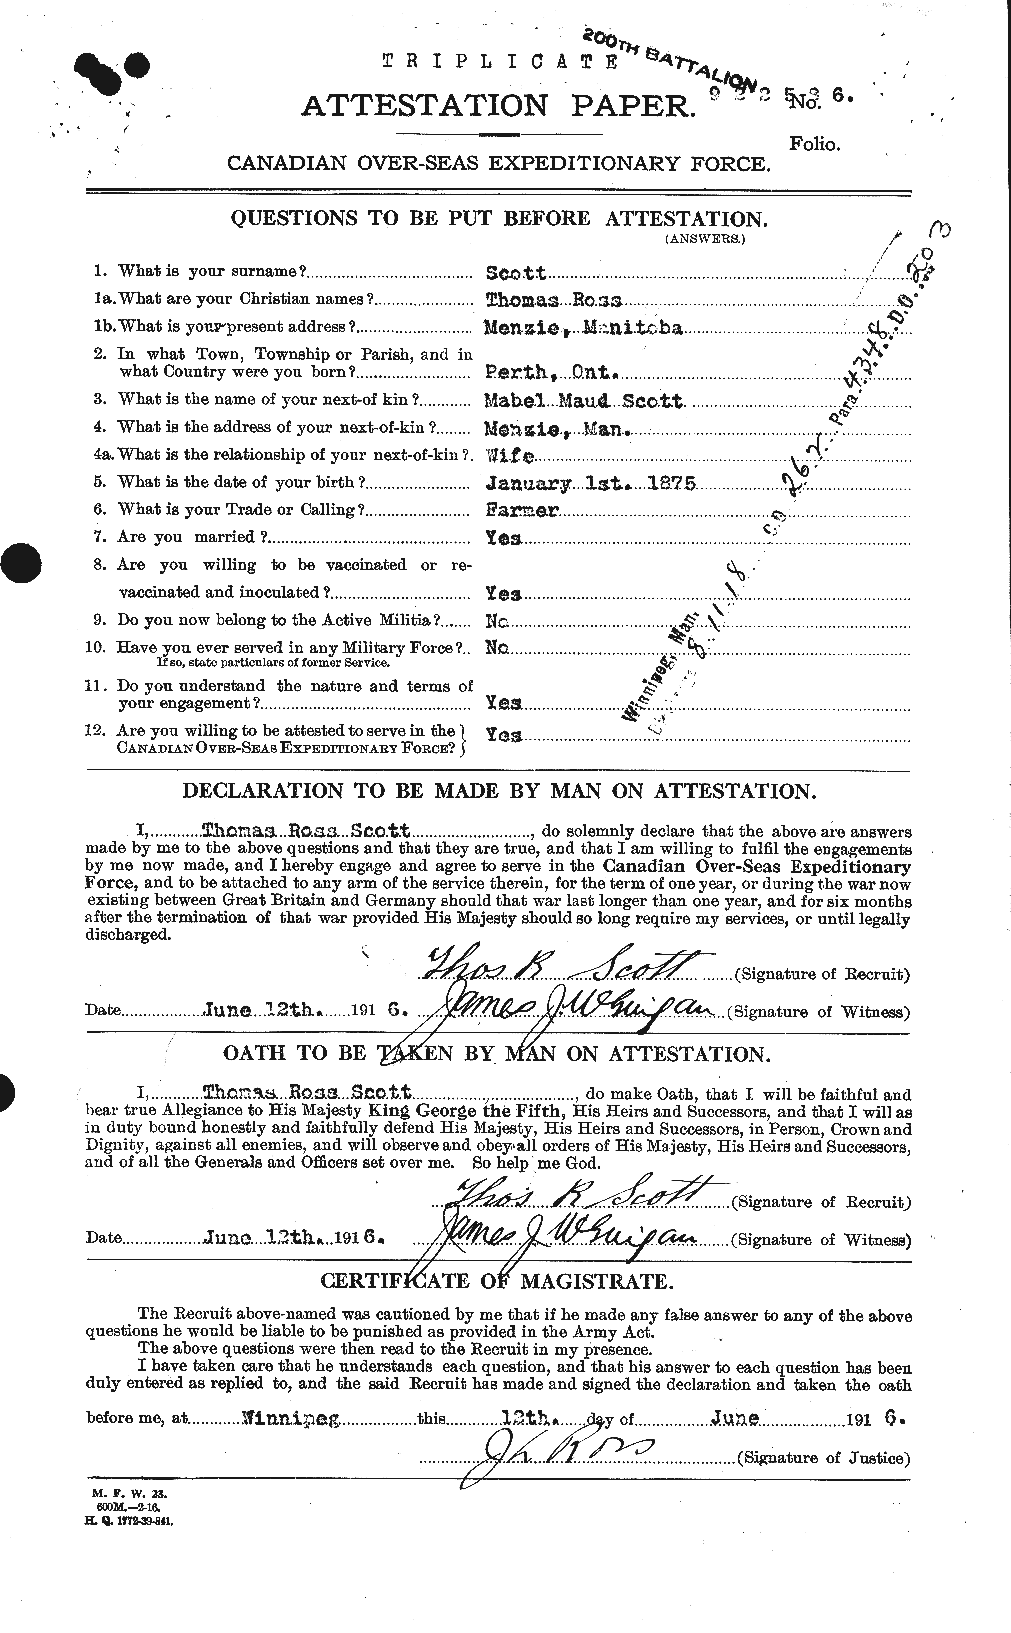 Dossiers du Personnel de la Première Guerre mondiale - CEC 088223a